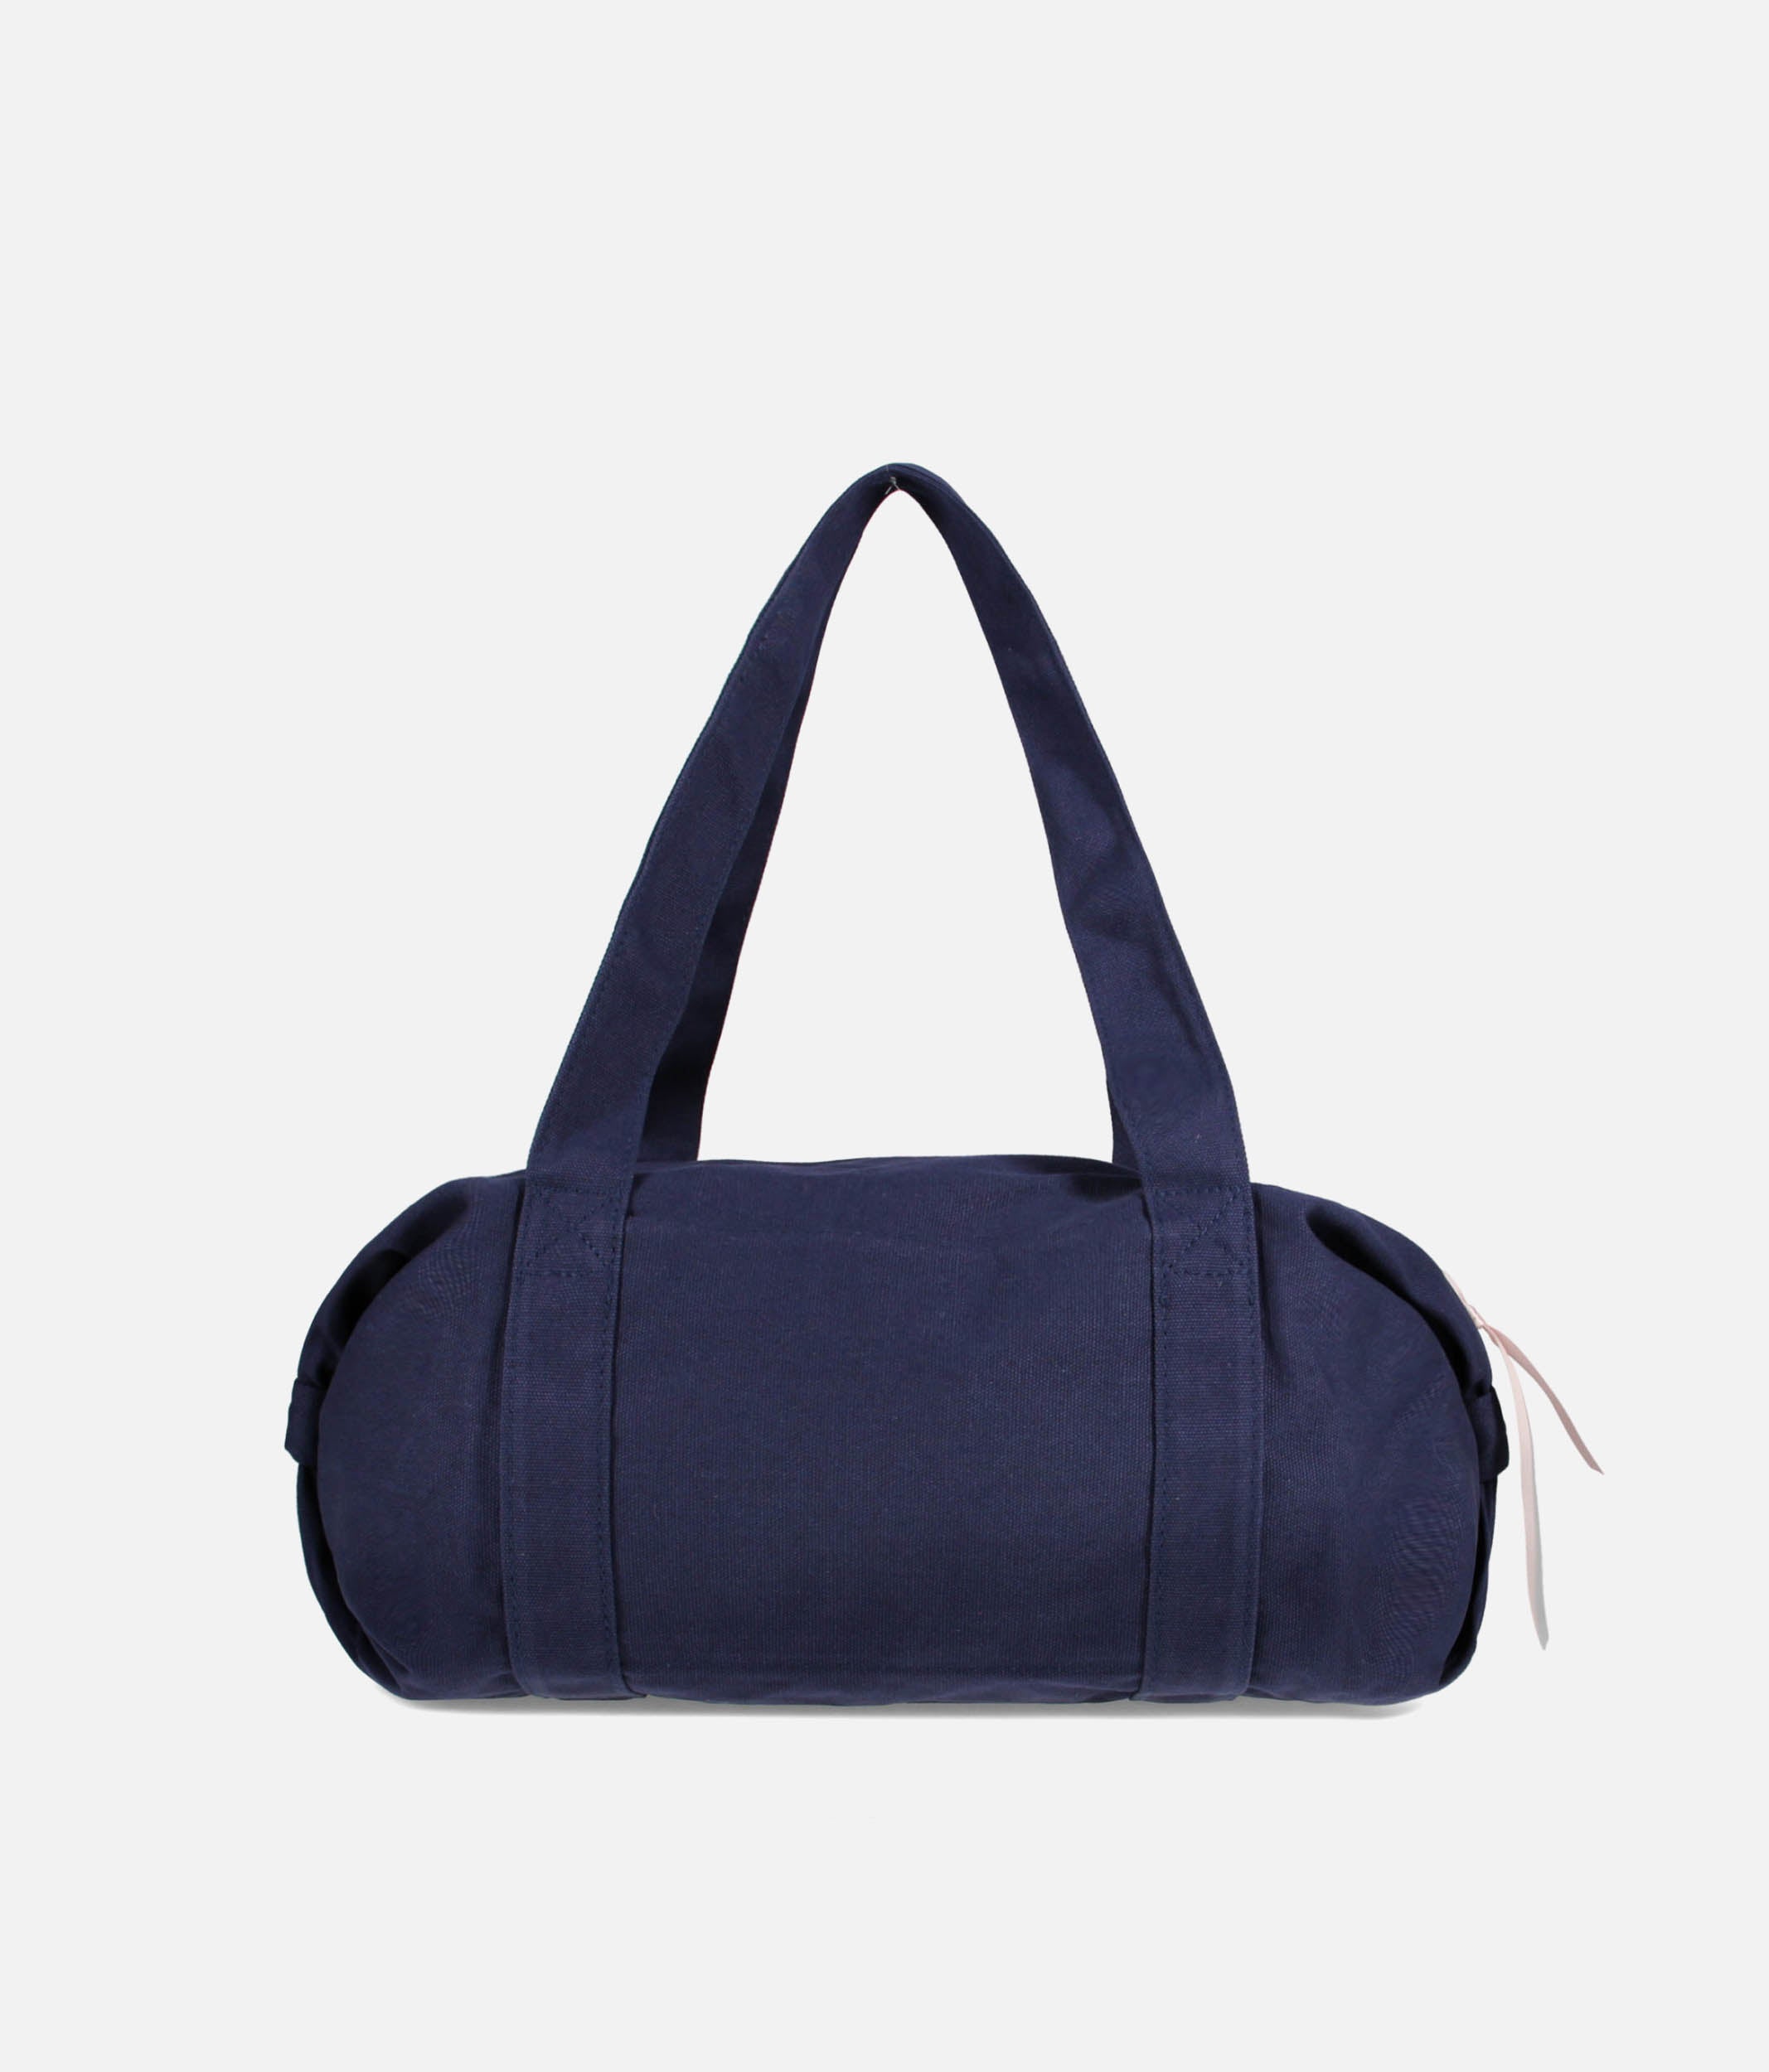 Cotton Duffle Bag - 0232